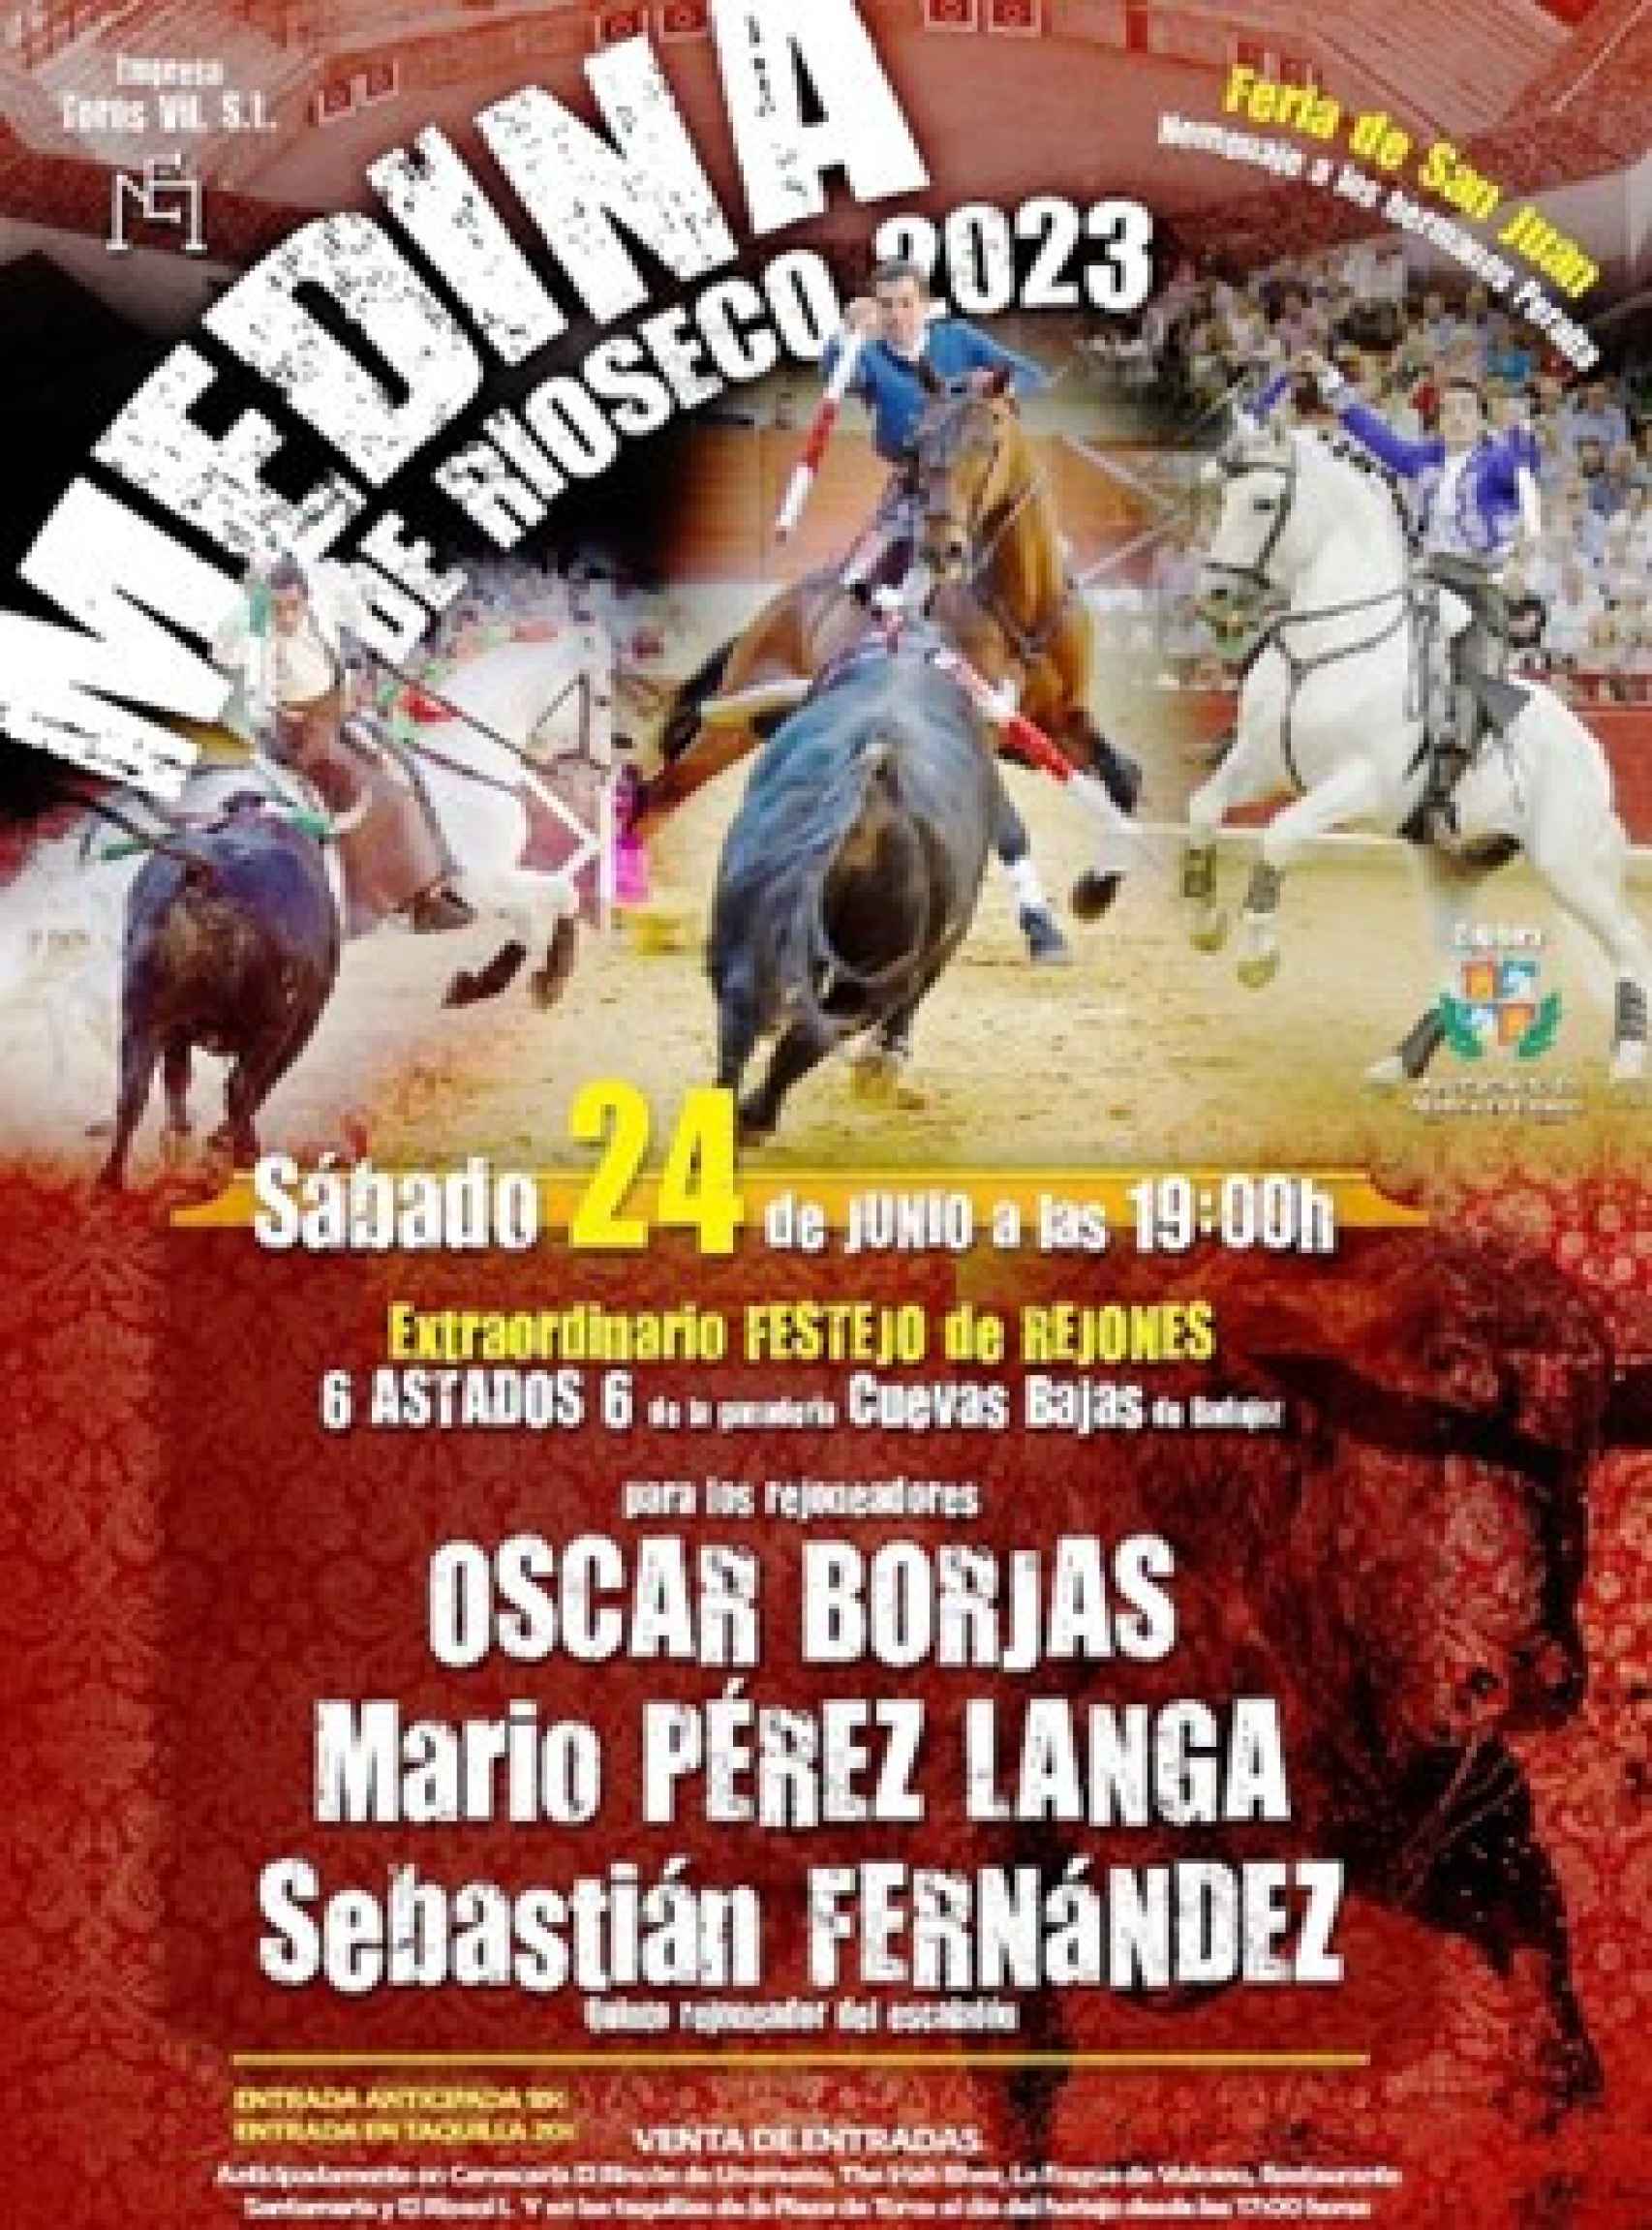 Cartel de la Feria de San Juan de Medina de Rioseco 2023